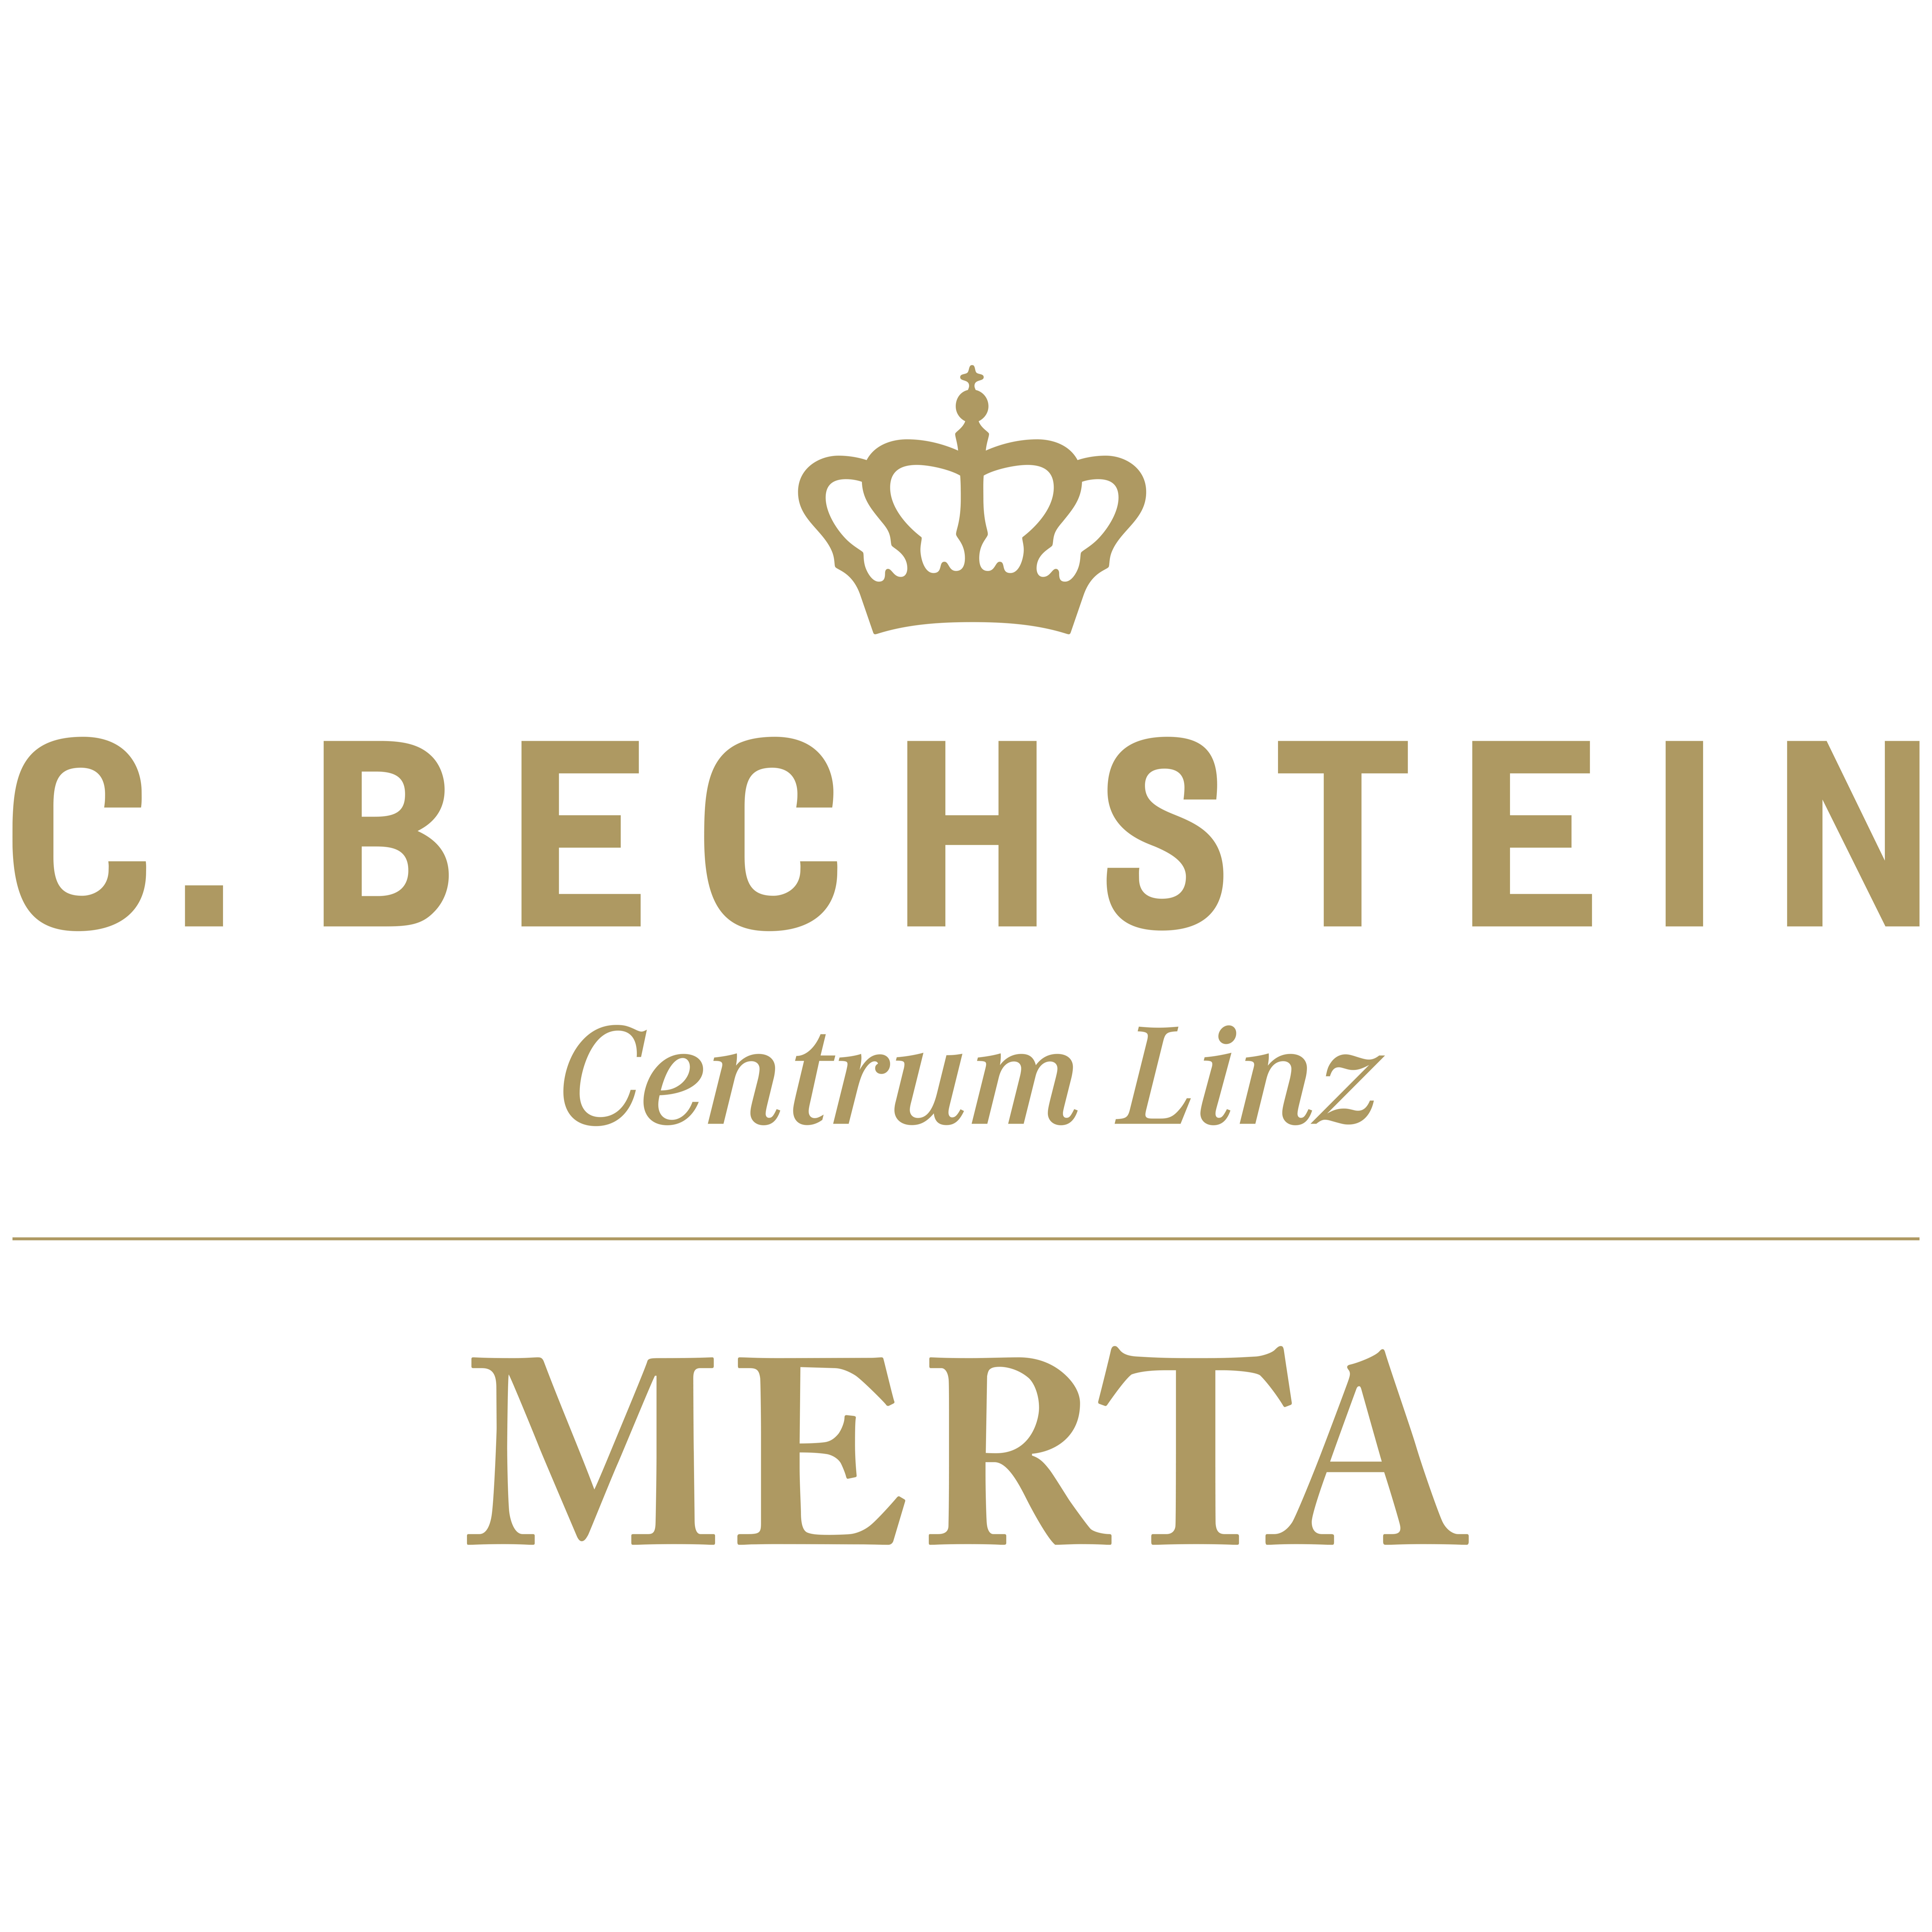 C. Bechstein Centrum Linz / Klaviersalon Merta GmbH - Piano Store - Linz - 0732 77800520 Austria | ShowMeLocal.com